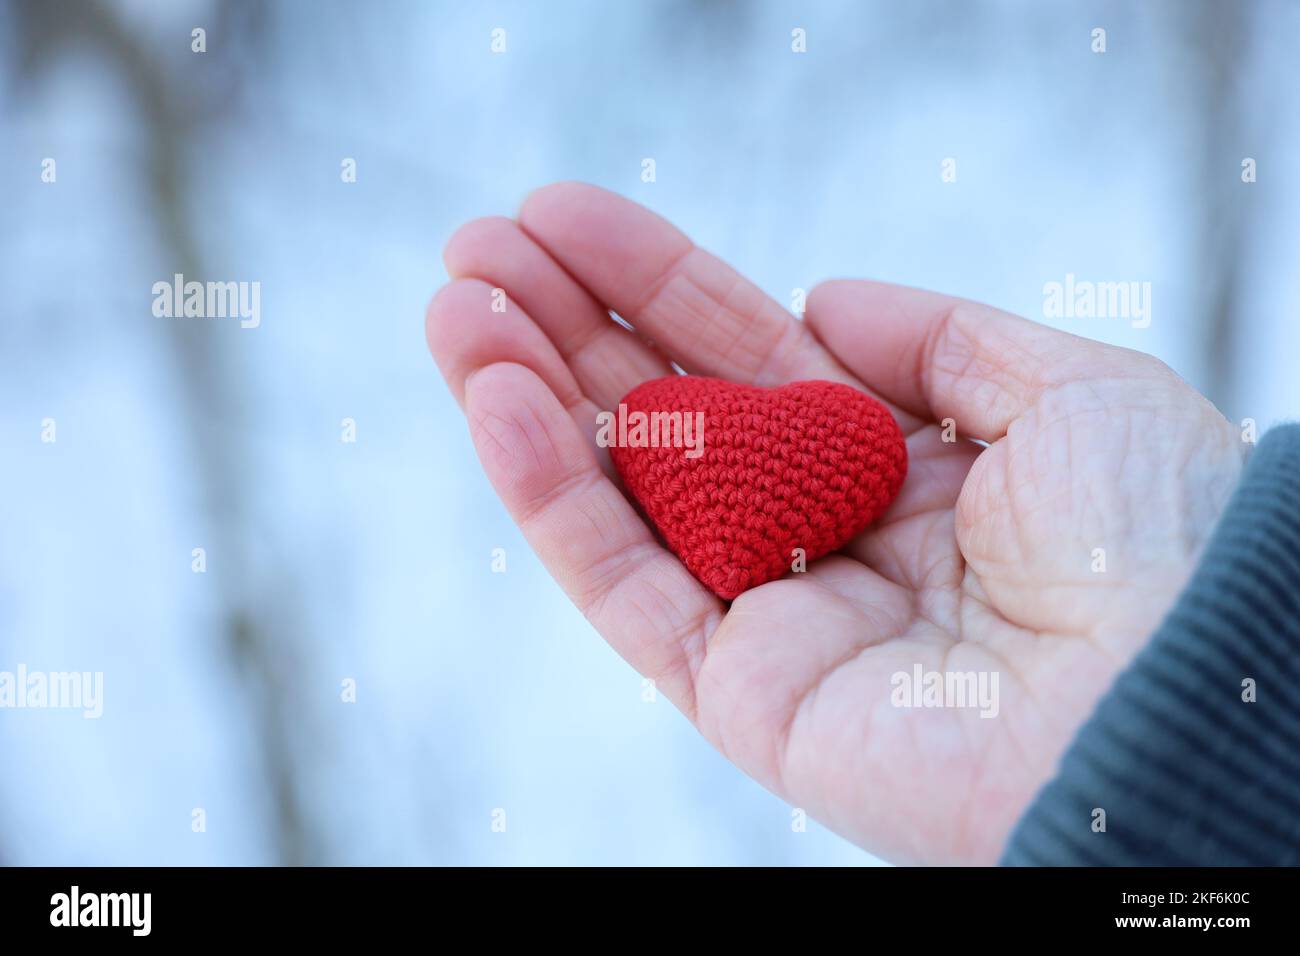 Coeur tricoté rouge dans la main femelle contre la forêt neigeuse. Concept d'amour romantique, vacances de Noël, Saint-Valentin, temps d'hiver ou charité Banque D'Images